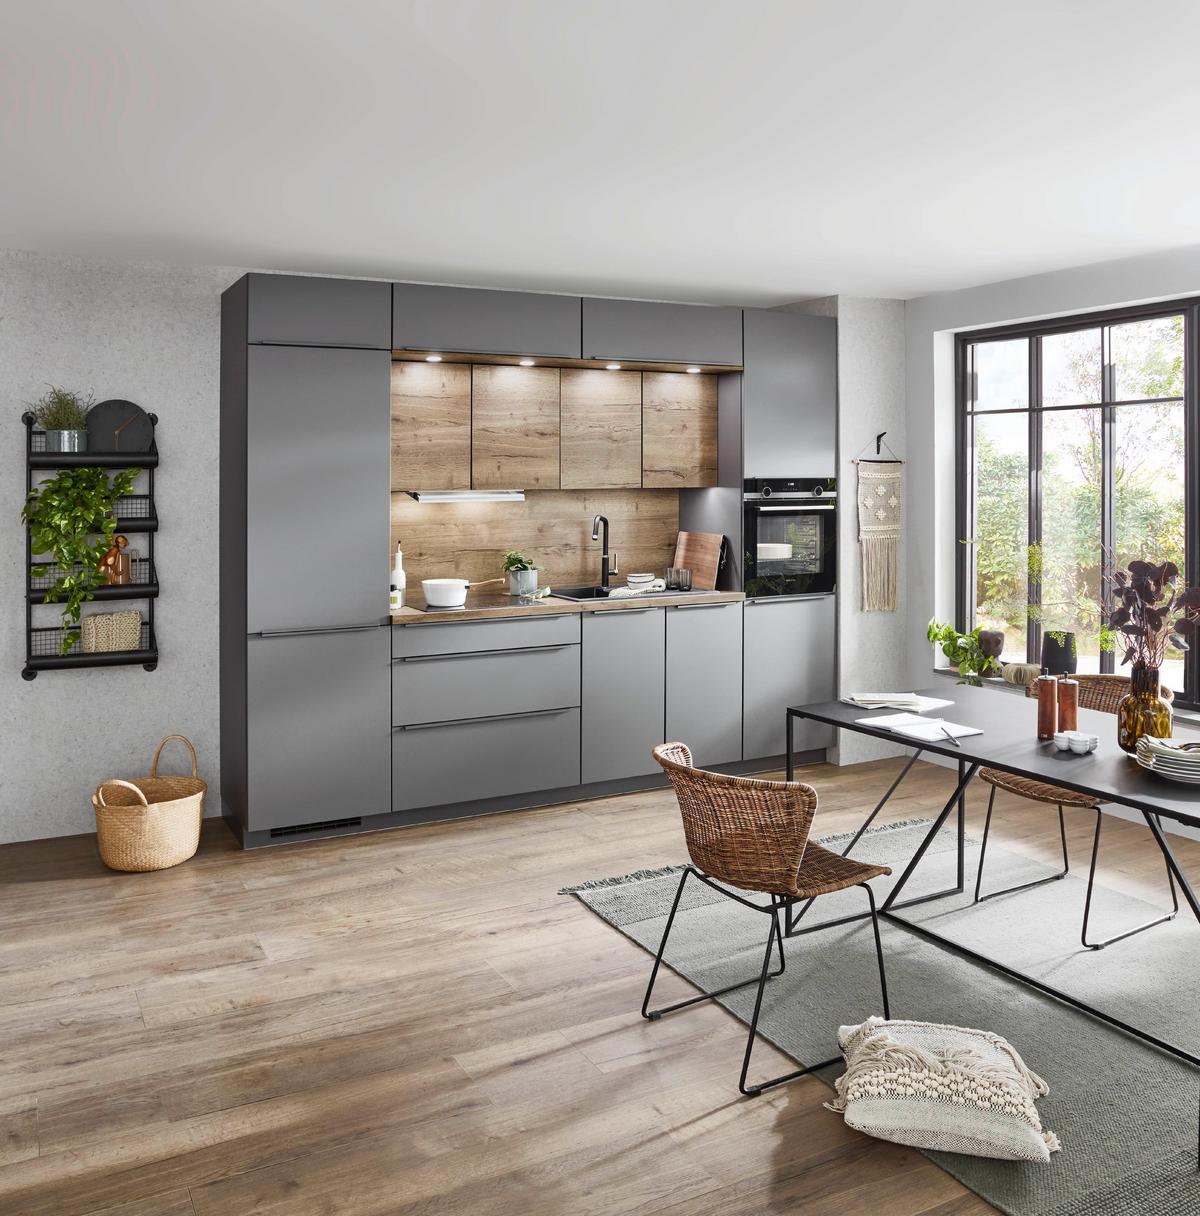 Küchenblock in Grau mit Stauraum kaufen » viel